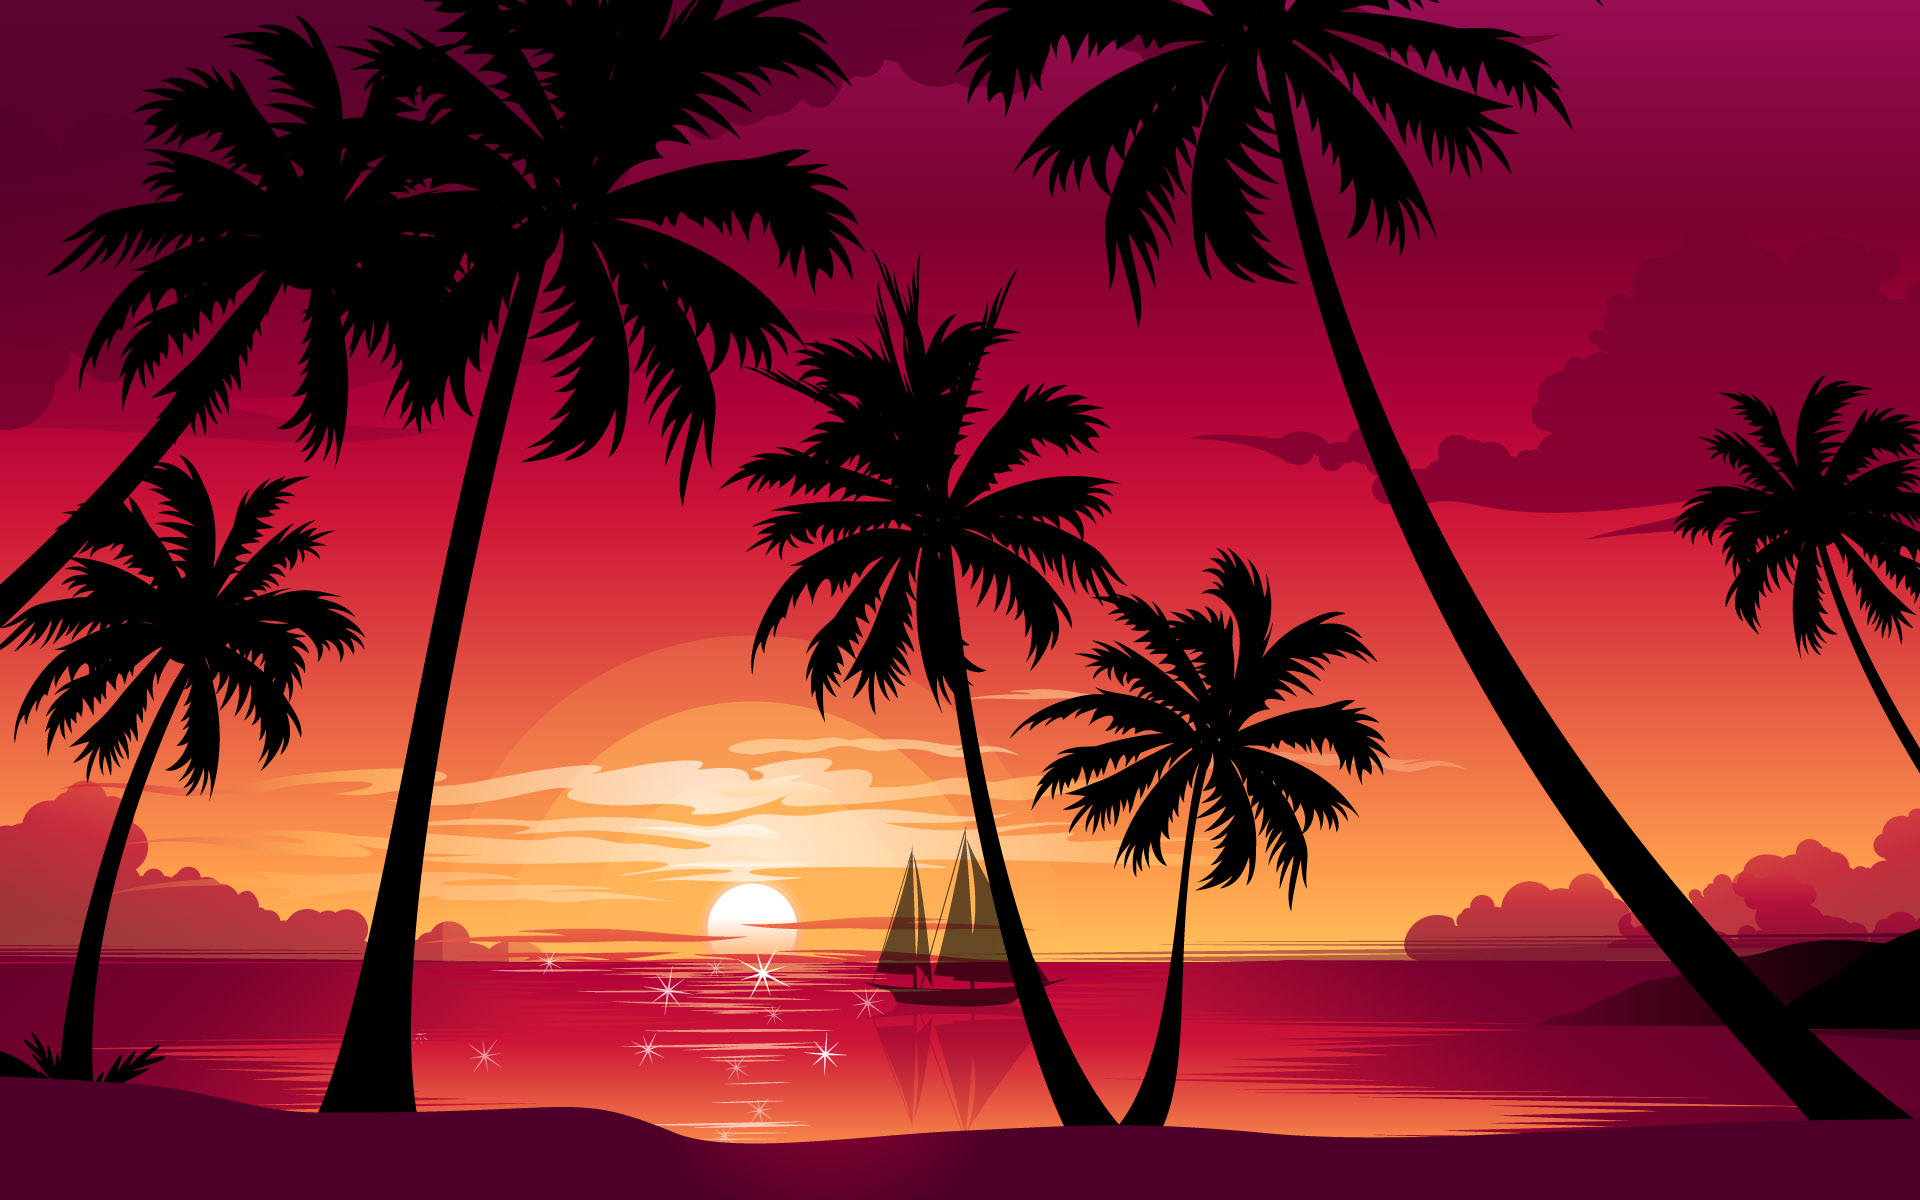 Sunset Desktop Wallpaper - Wallpaper, High Definition, High Quality